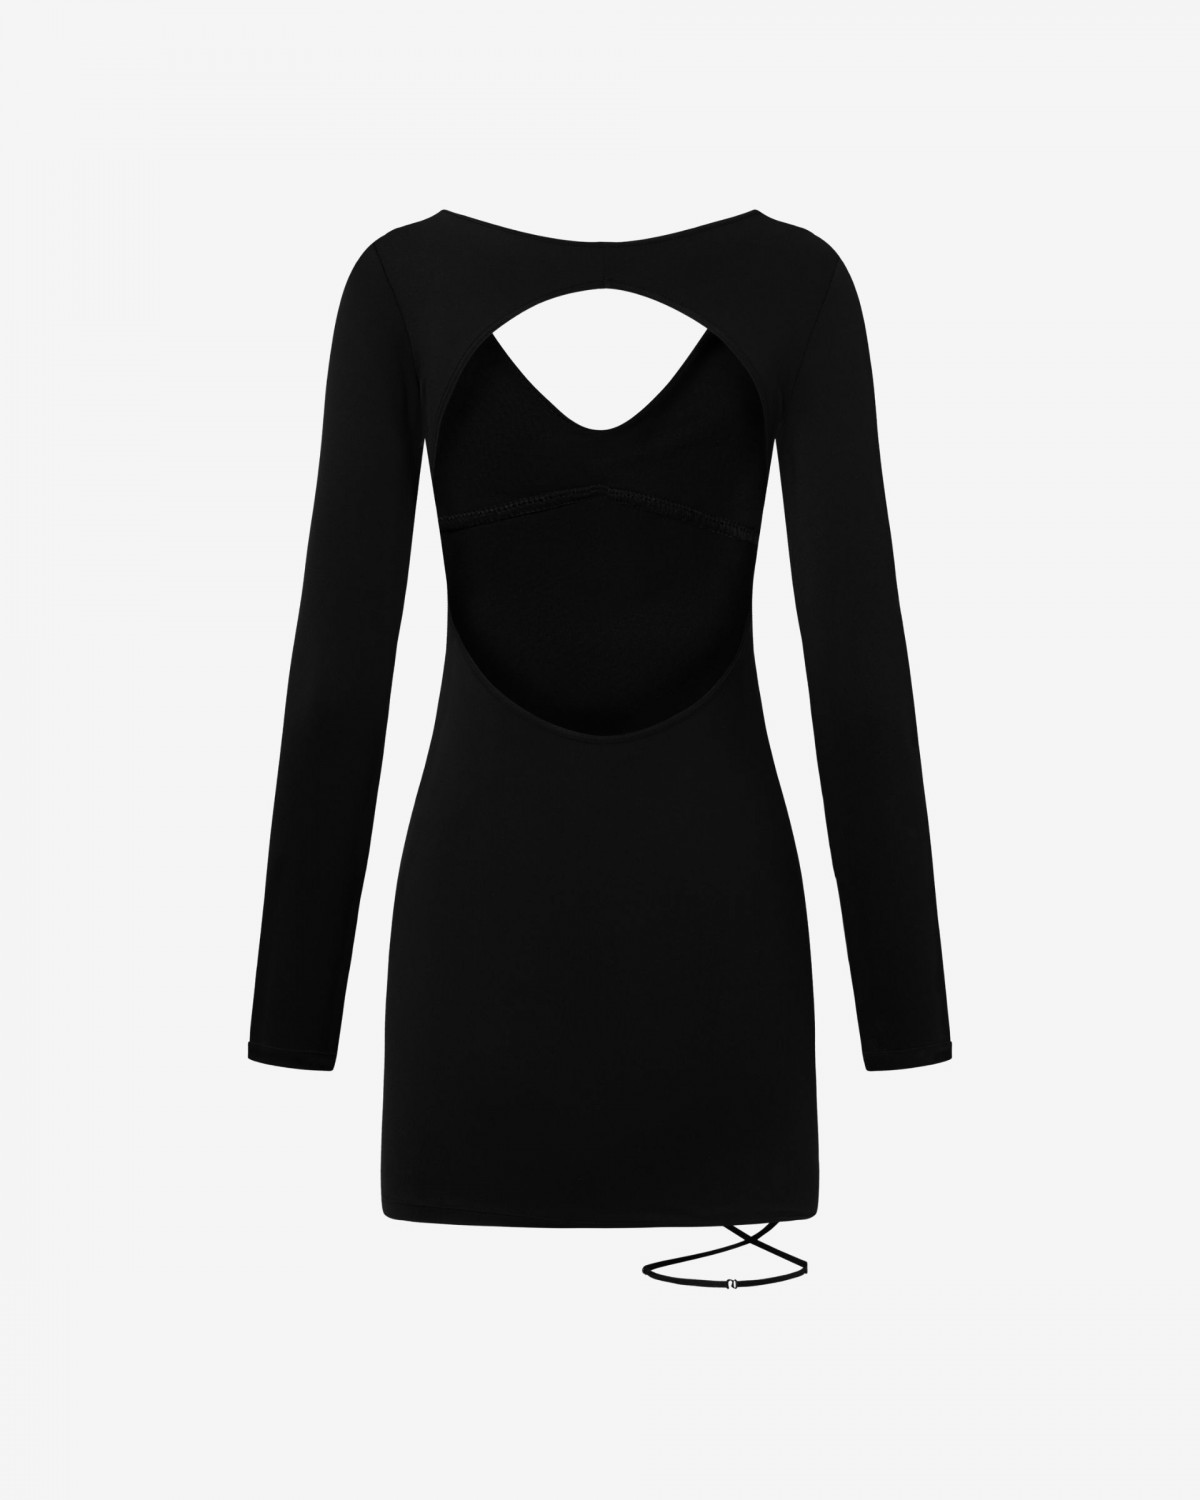 czarna sukienka erotyczna w sklepie internetowym promees